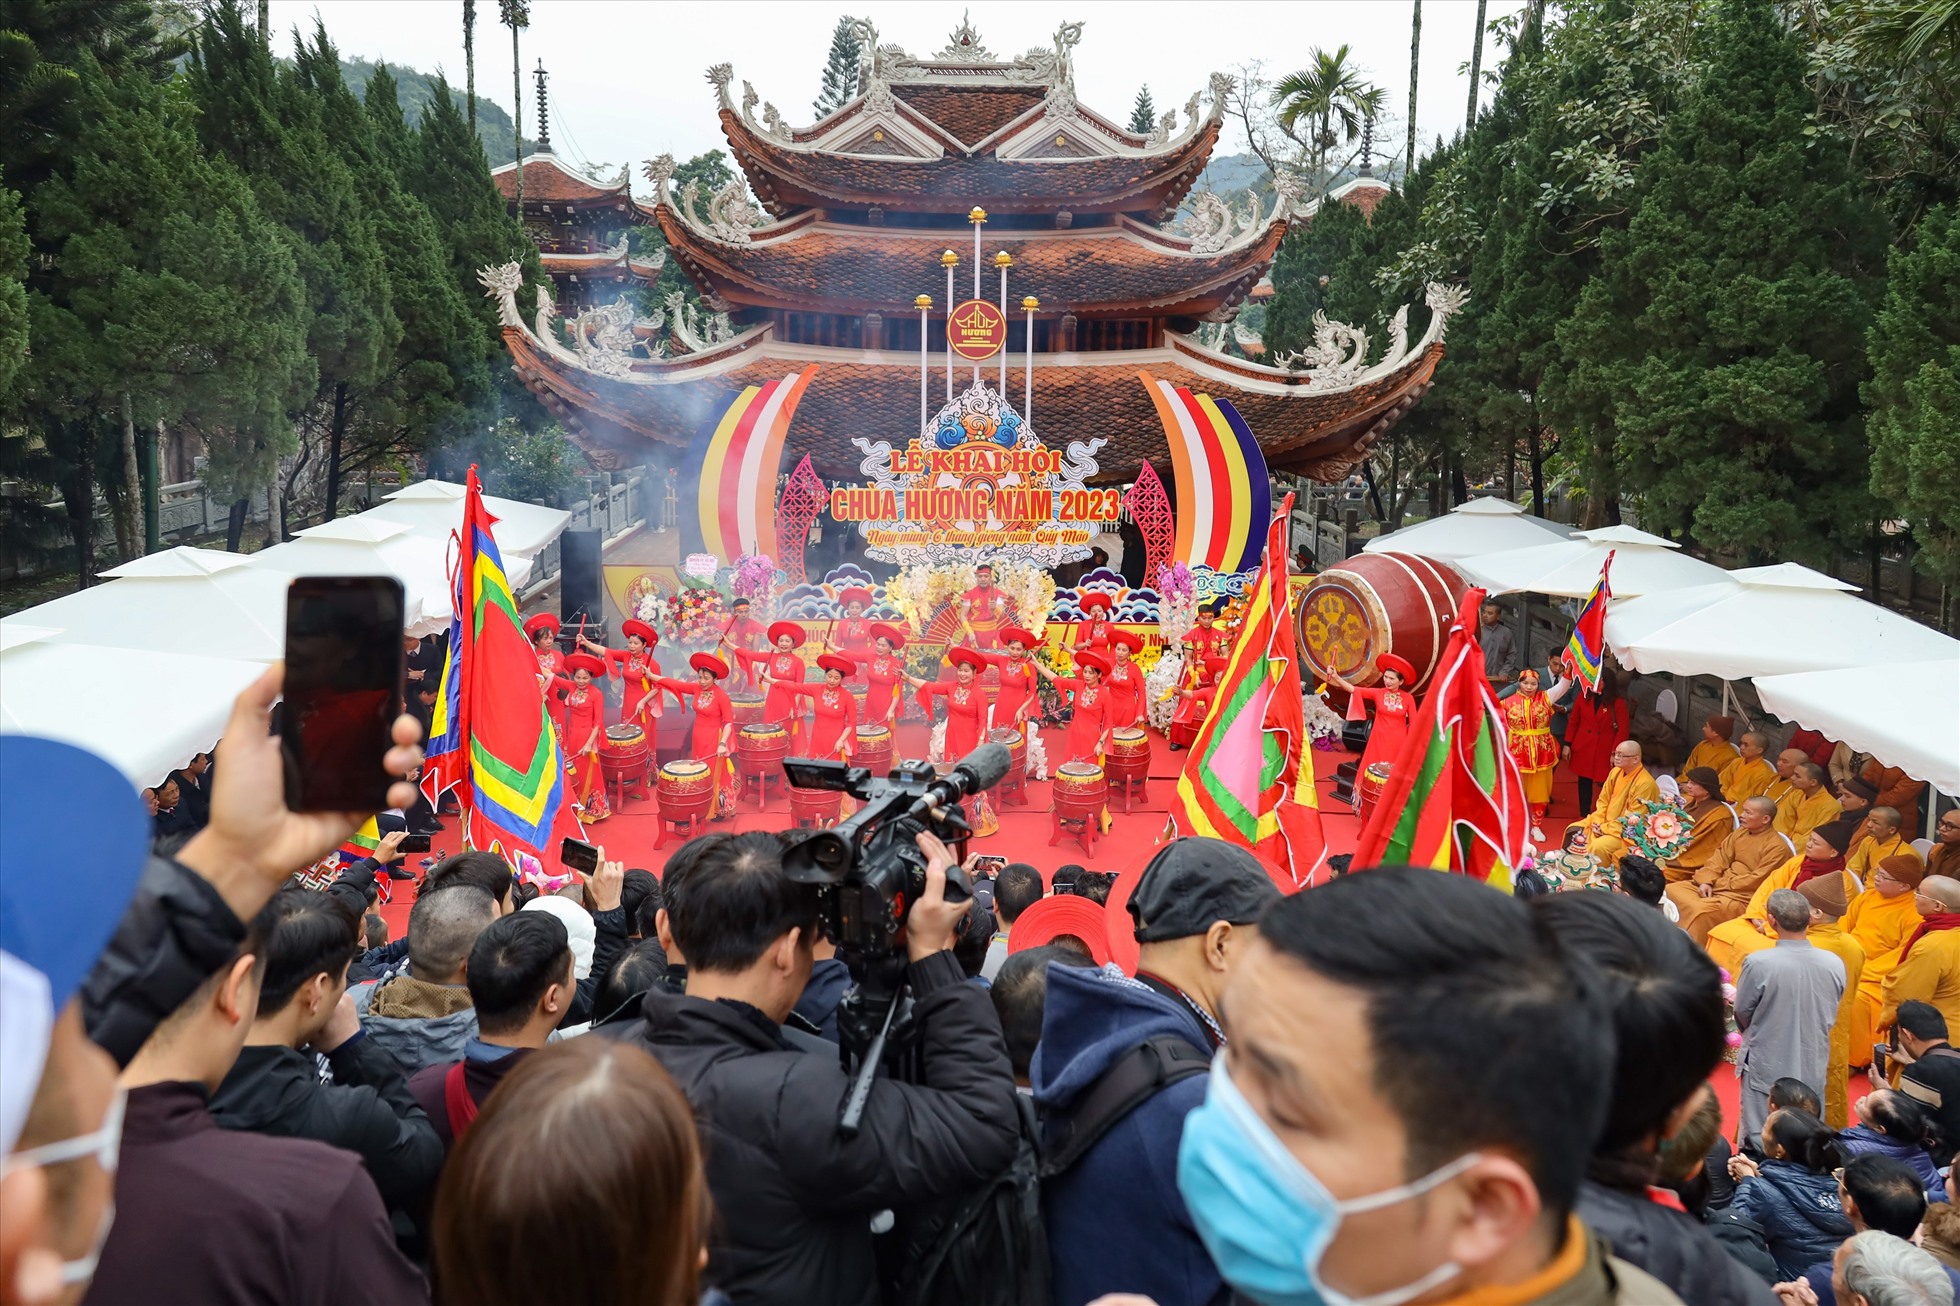 Lễ hội chùa Hương năm nay có nhiều đổi mới để đáp ứng nhu cầu tham quan, thưởng ngoạn của du khách về với miền đất Phật.